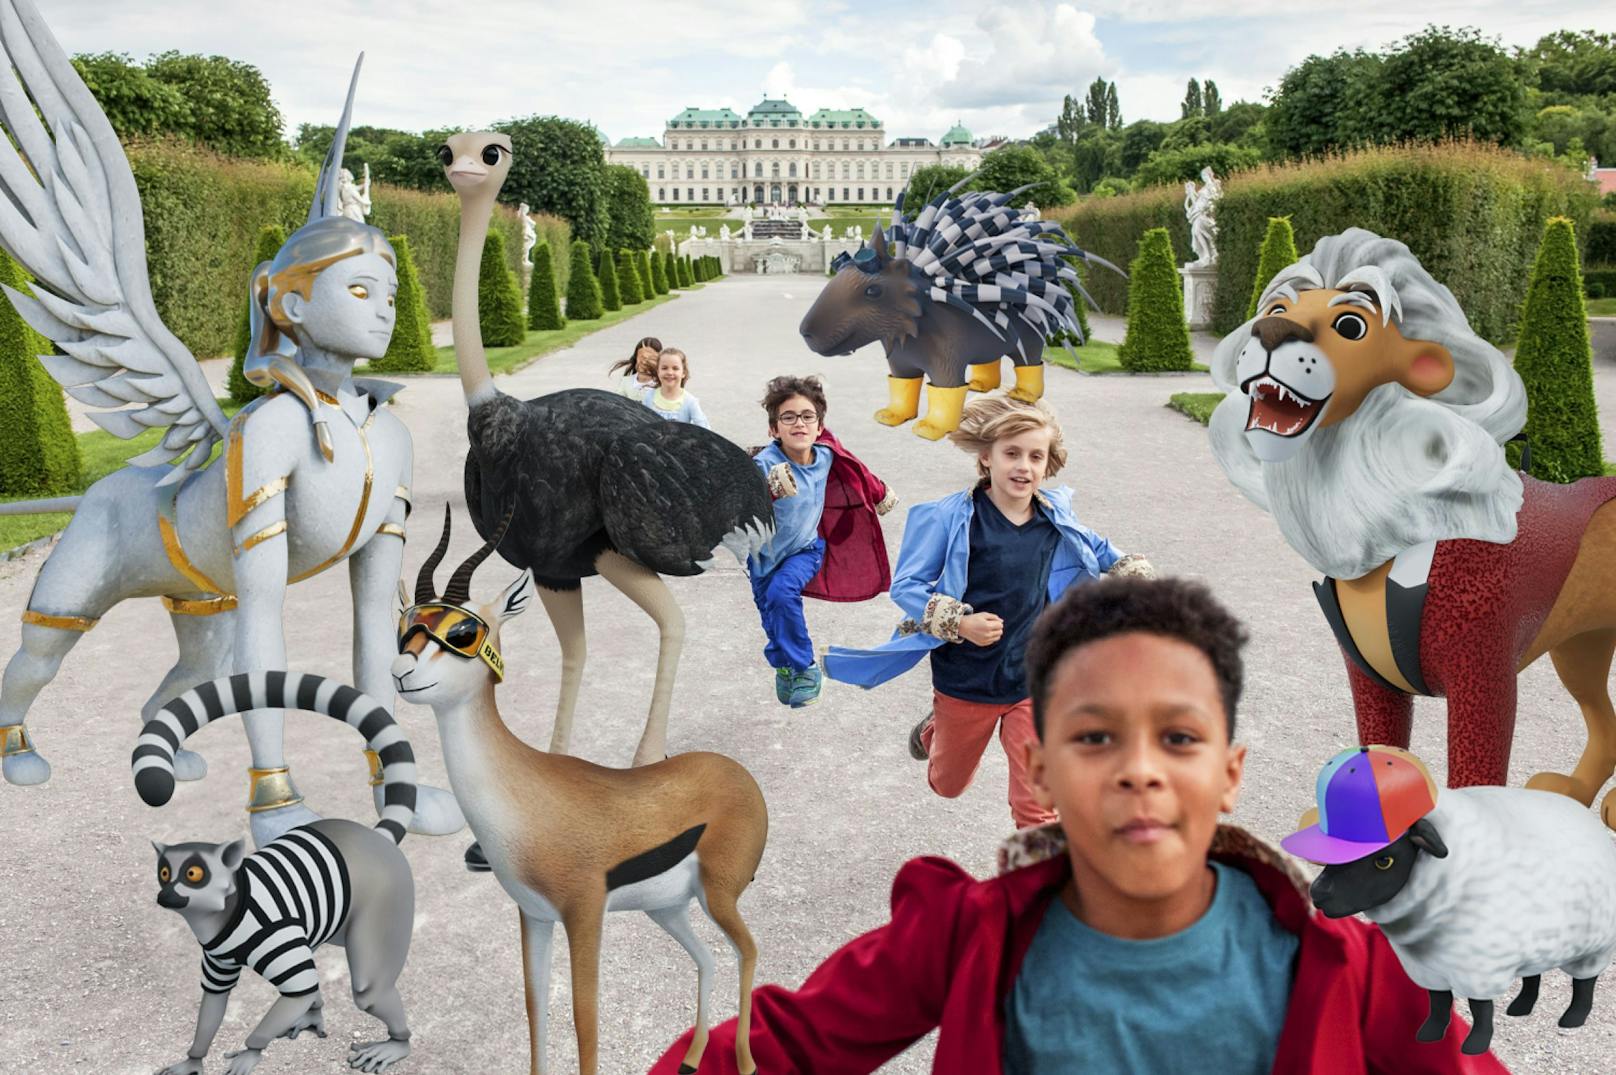 "The Fantastic Palastics" – neues Augmented-Reality-Spiel im historischen Garten des Wiener Belvedere